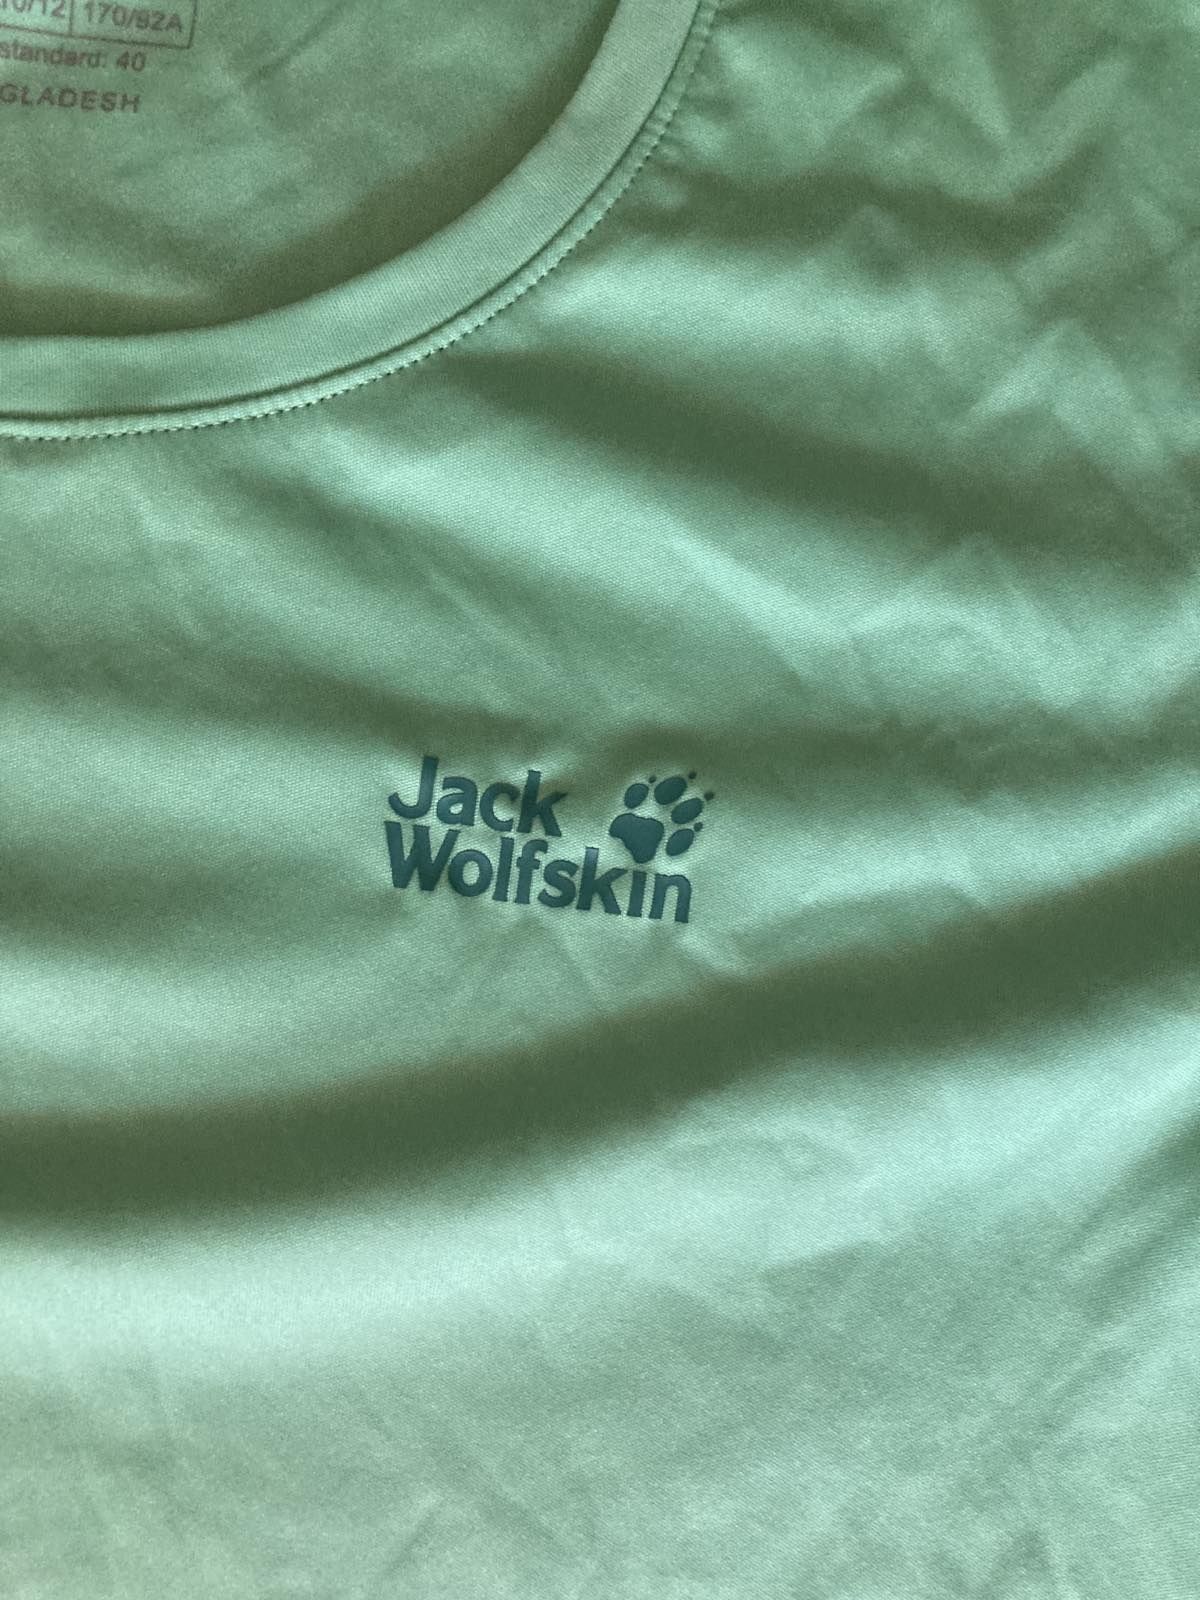 Дамска тениска Jack wolfskin - M размер - Нова